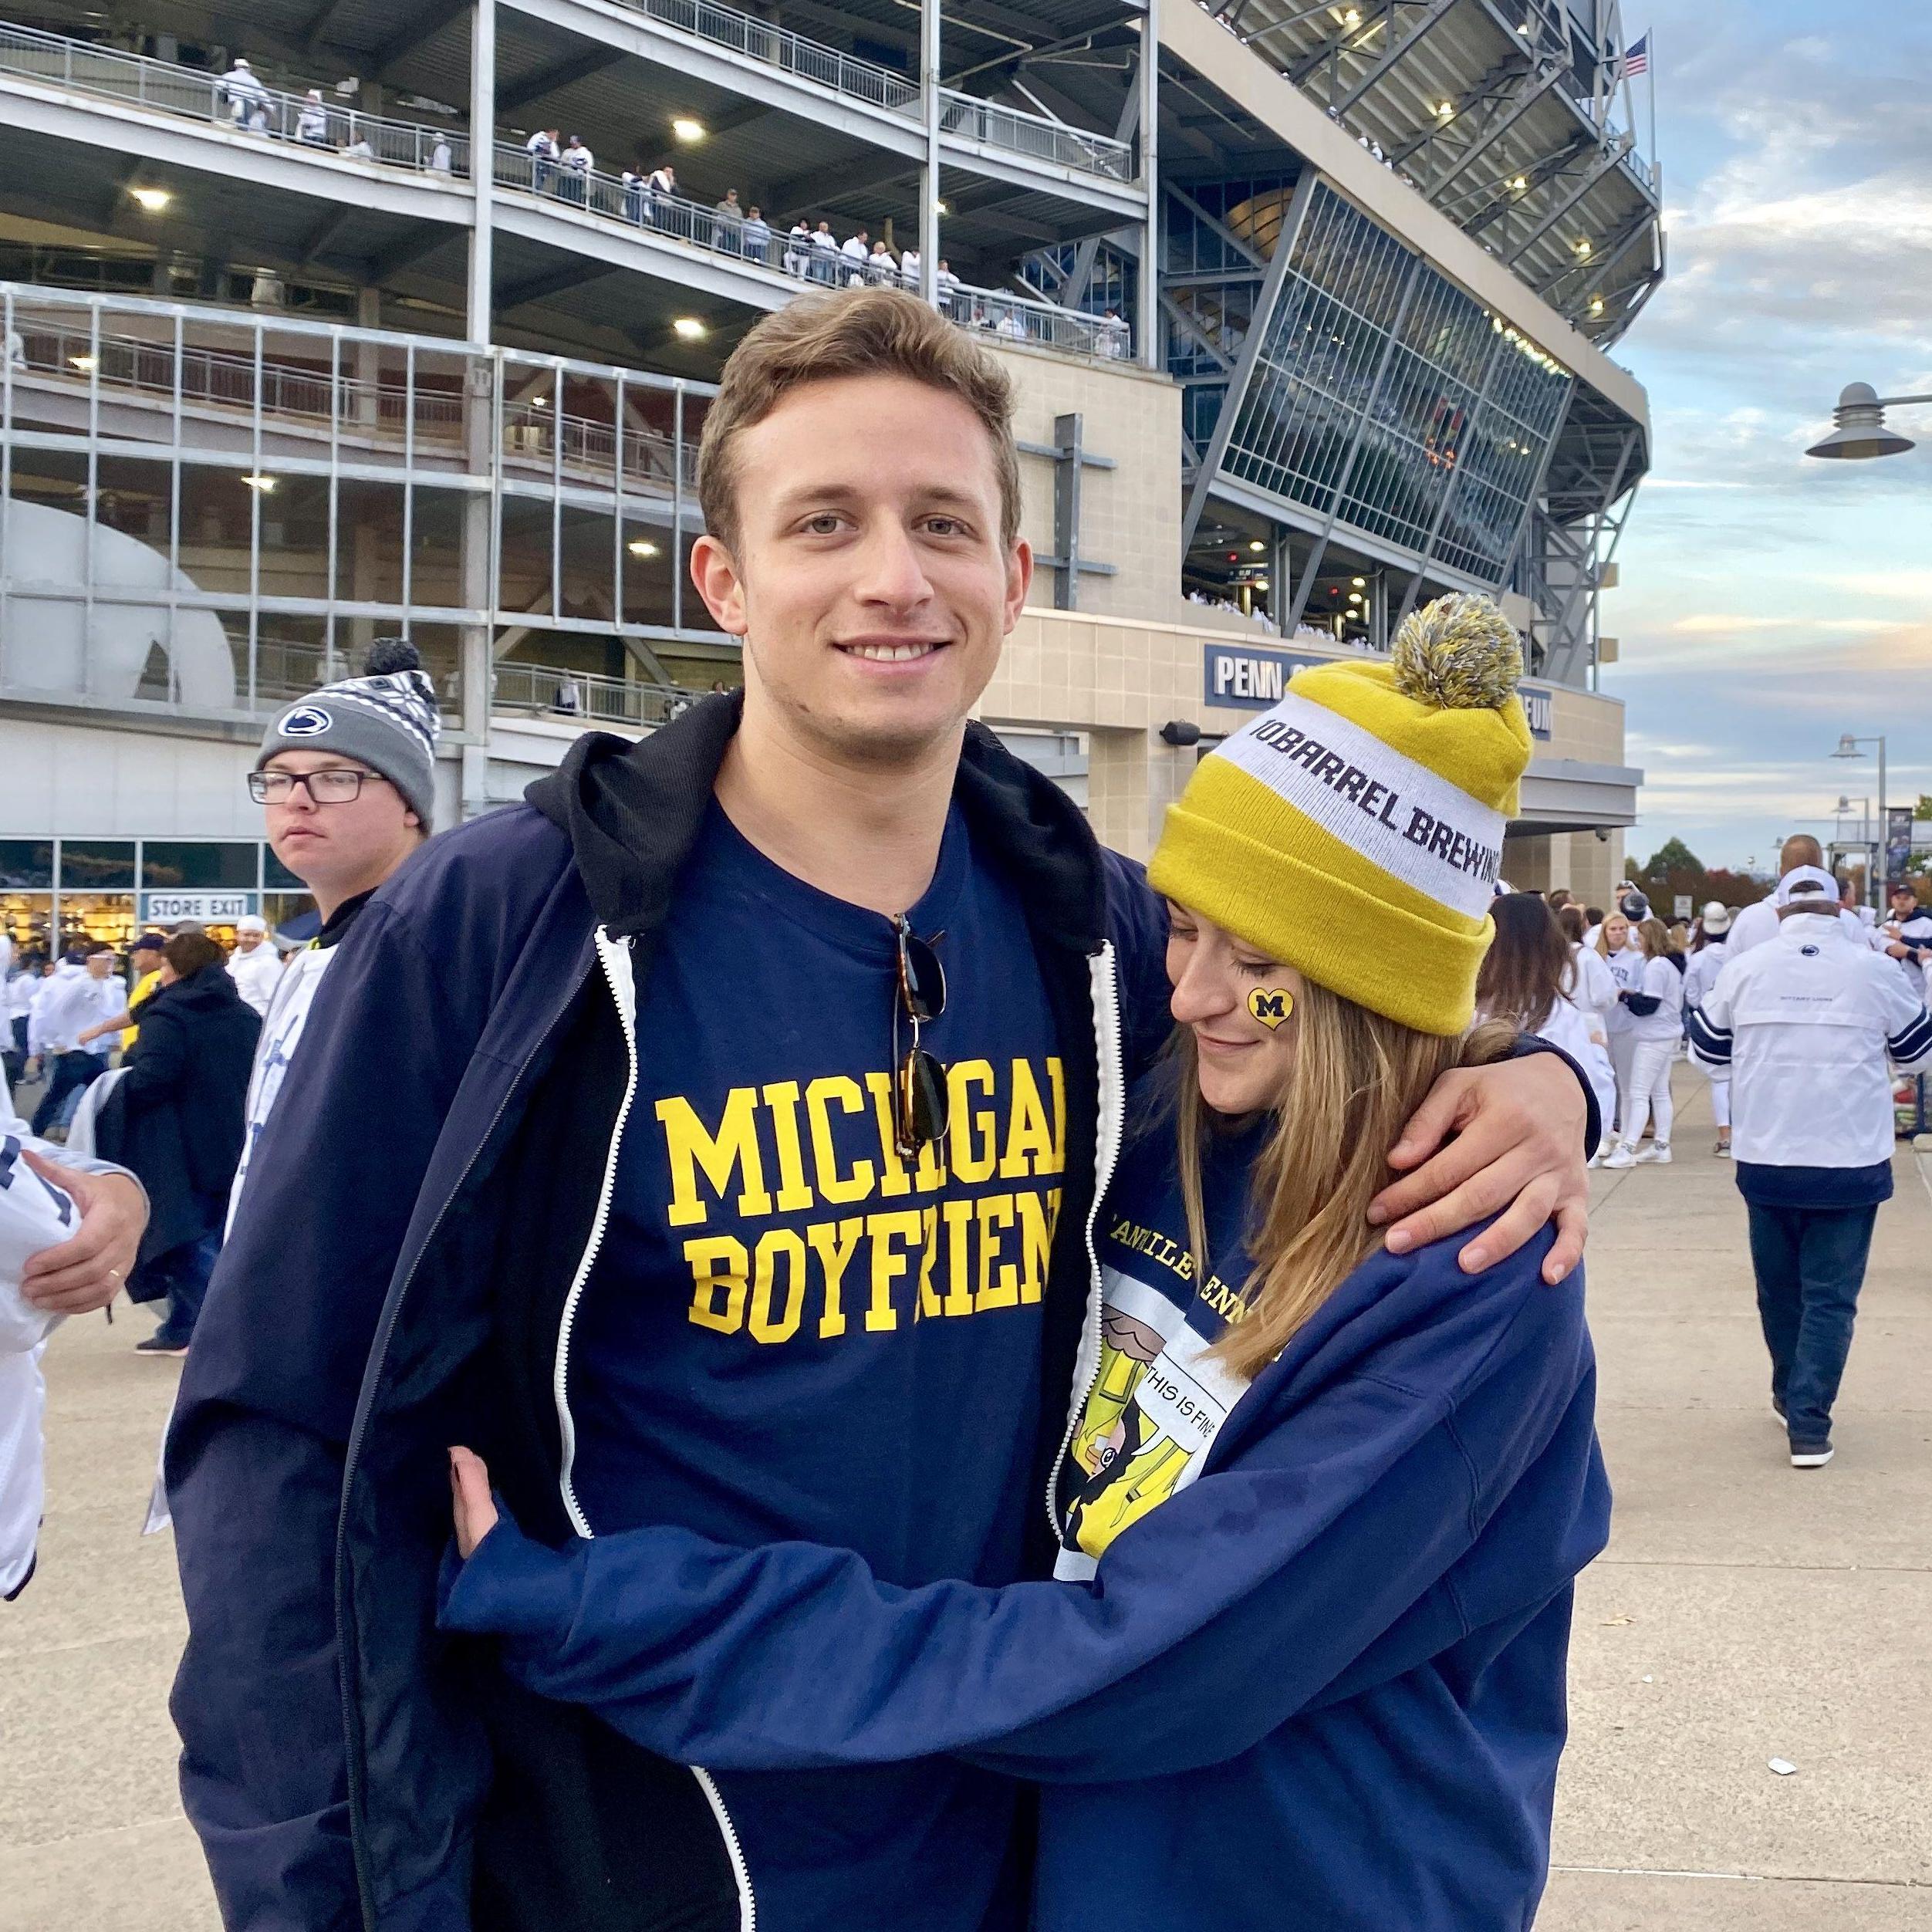 Matt loves Michigan. Go blue!